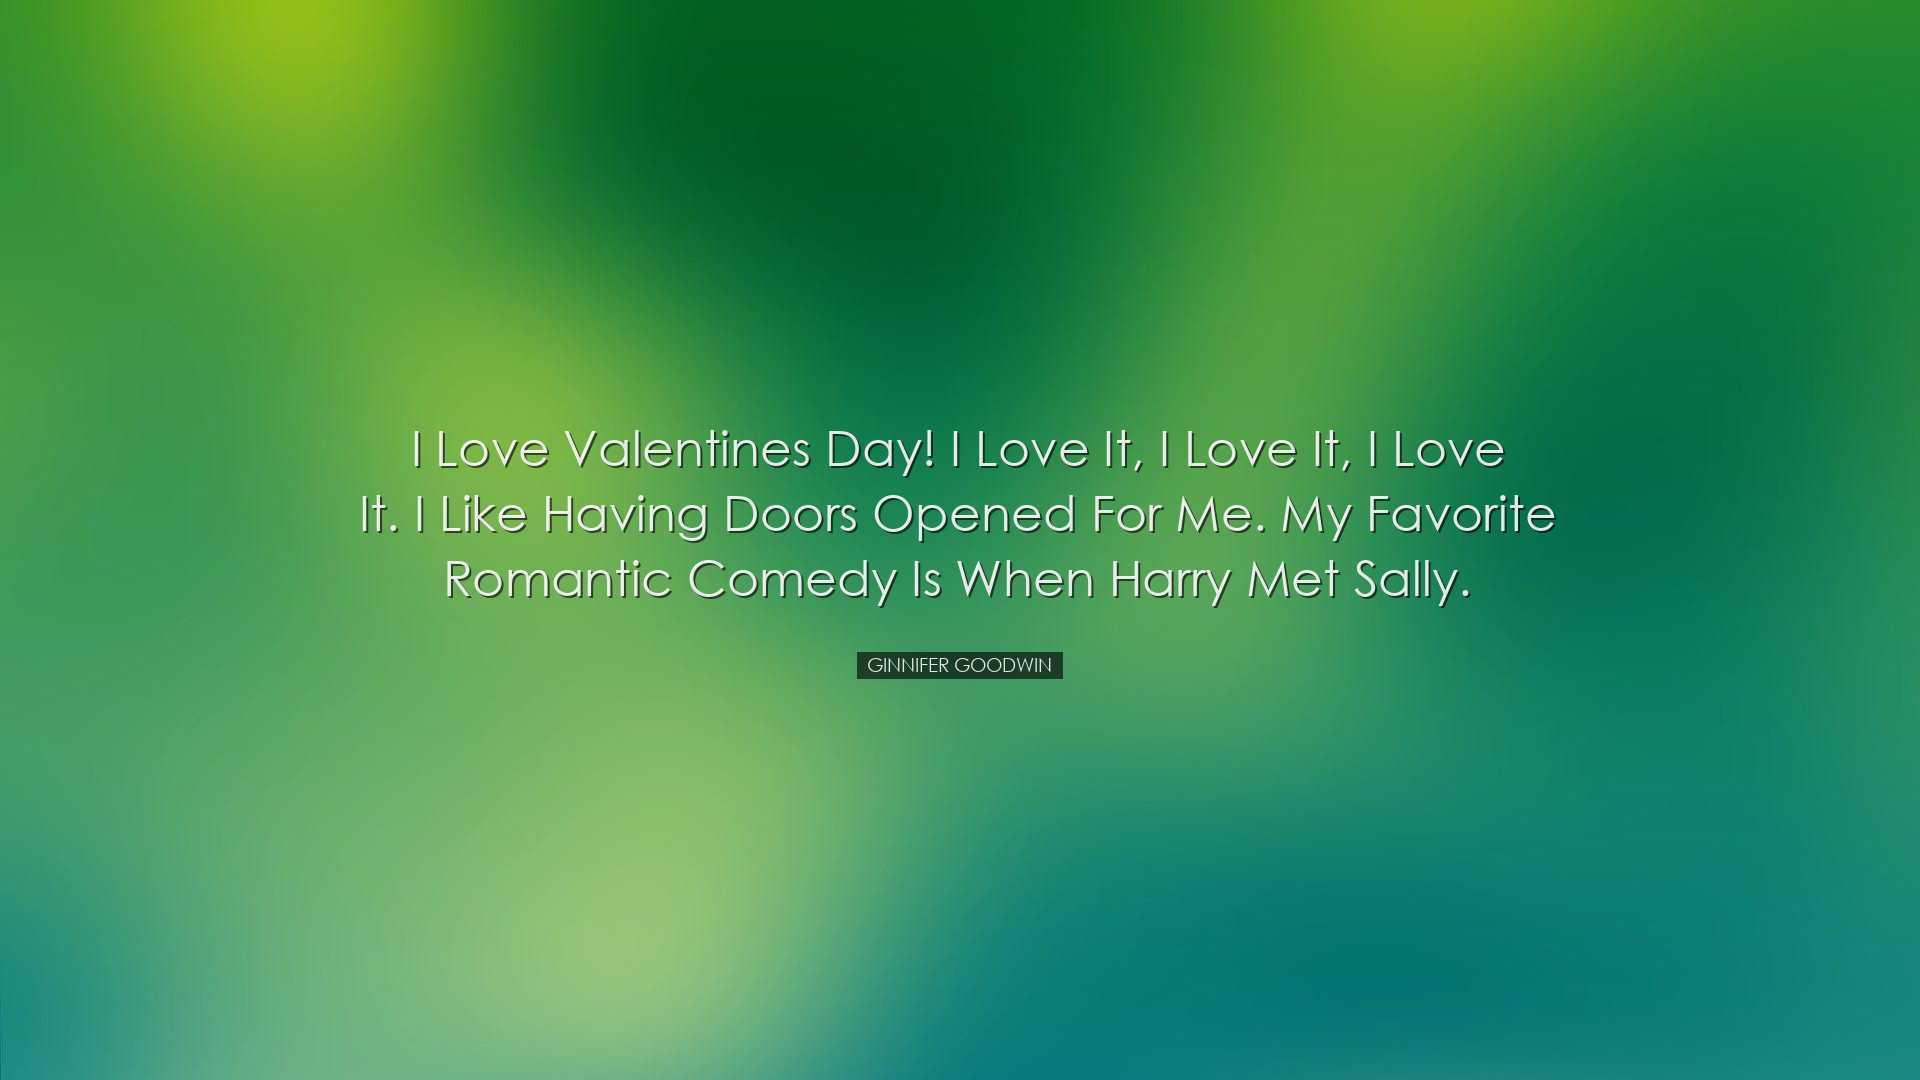 I love Valentines Day! I love it, I love it, I love it. I like hav